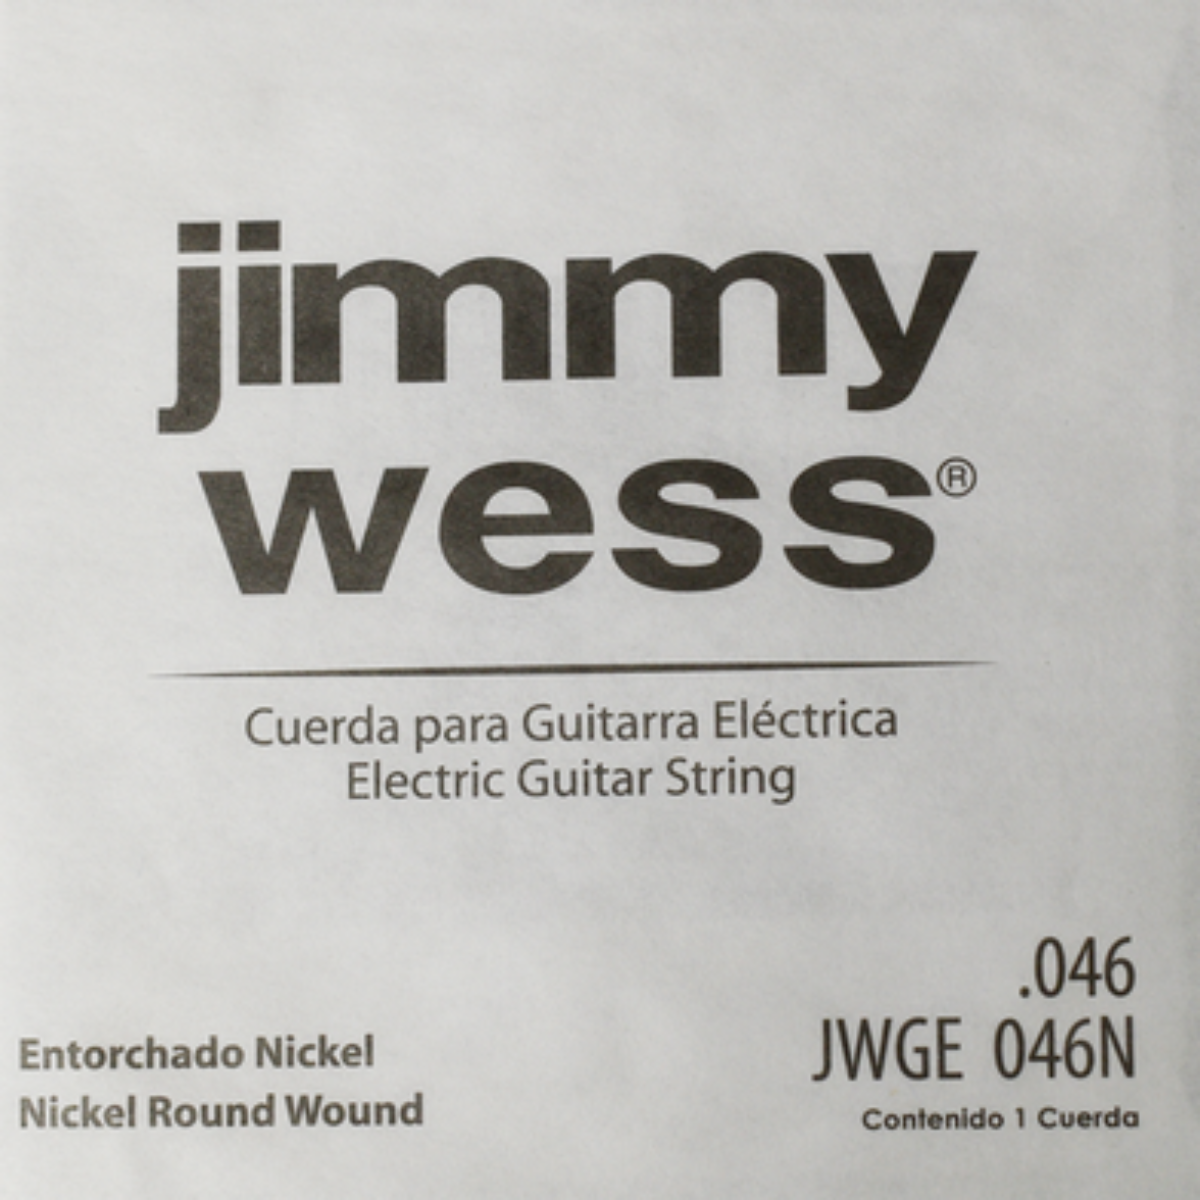 CUERDA P/GUITARRA ELECTRICA JIMMYWESS PRO 6A NIQ46